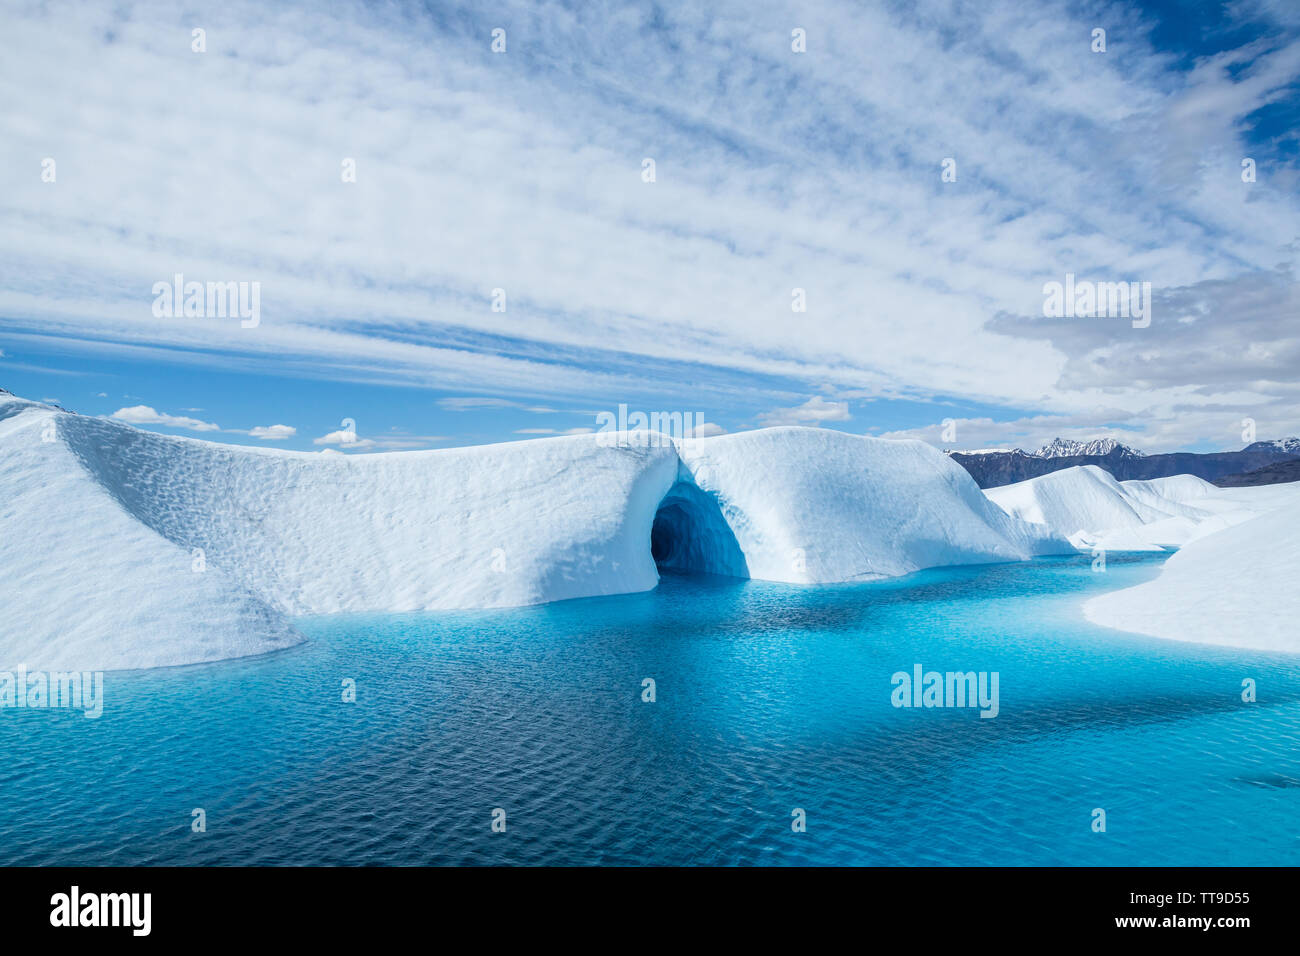 Cristalline acque blu inondata una caverna di ghiaccio sulla superficie del Ghiacciaio Matanuska in Alaska. La piscina è formata dalla fusione del ghiaccio del ghiacciaio in caldo Foto Stock